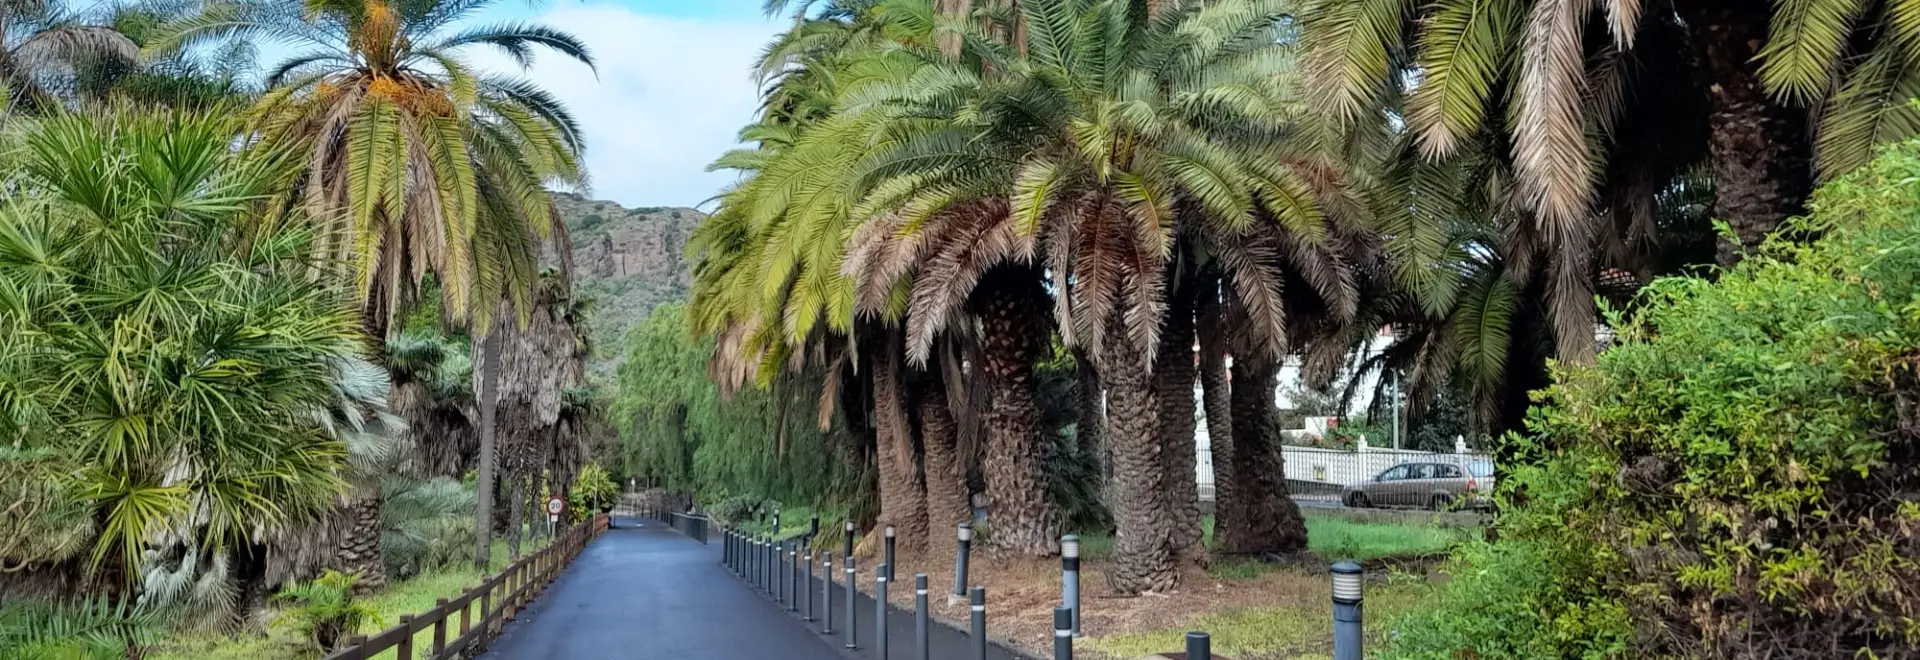 Fiesta și răsfățul primăverii în Gran Canaria